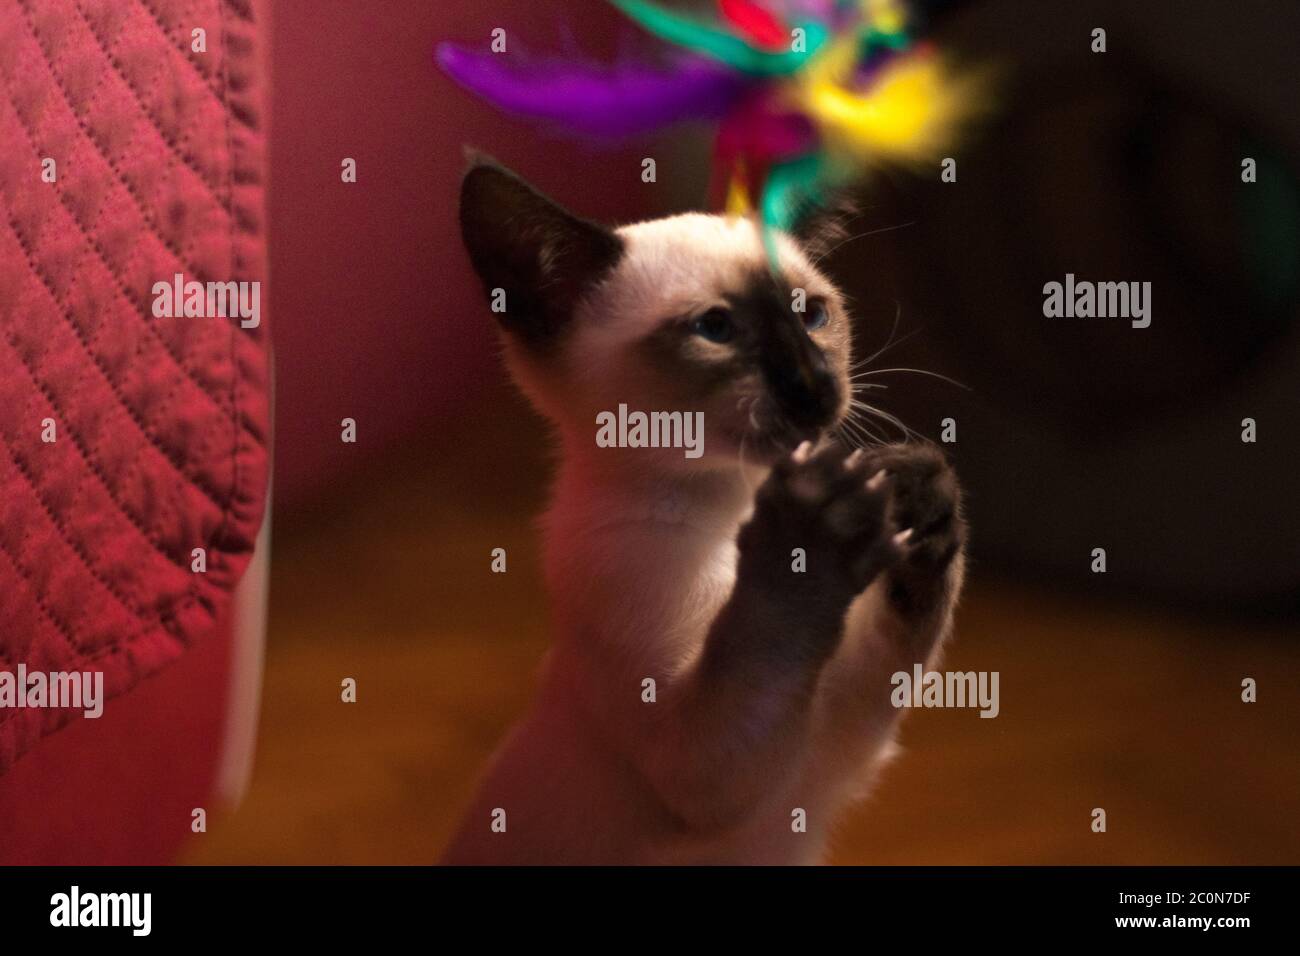 Fotografia creativa di un gattino siamese che gioca con piume colorate a casa Foto Stock